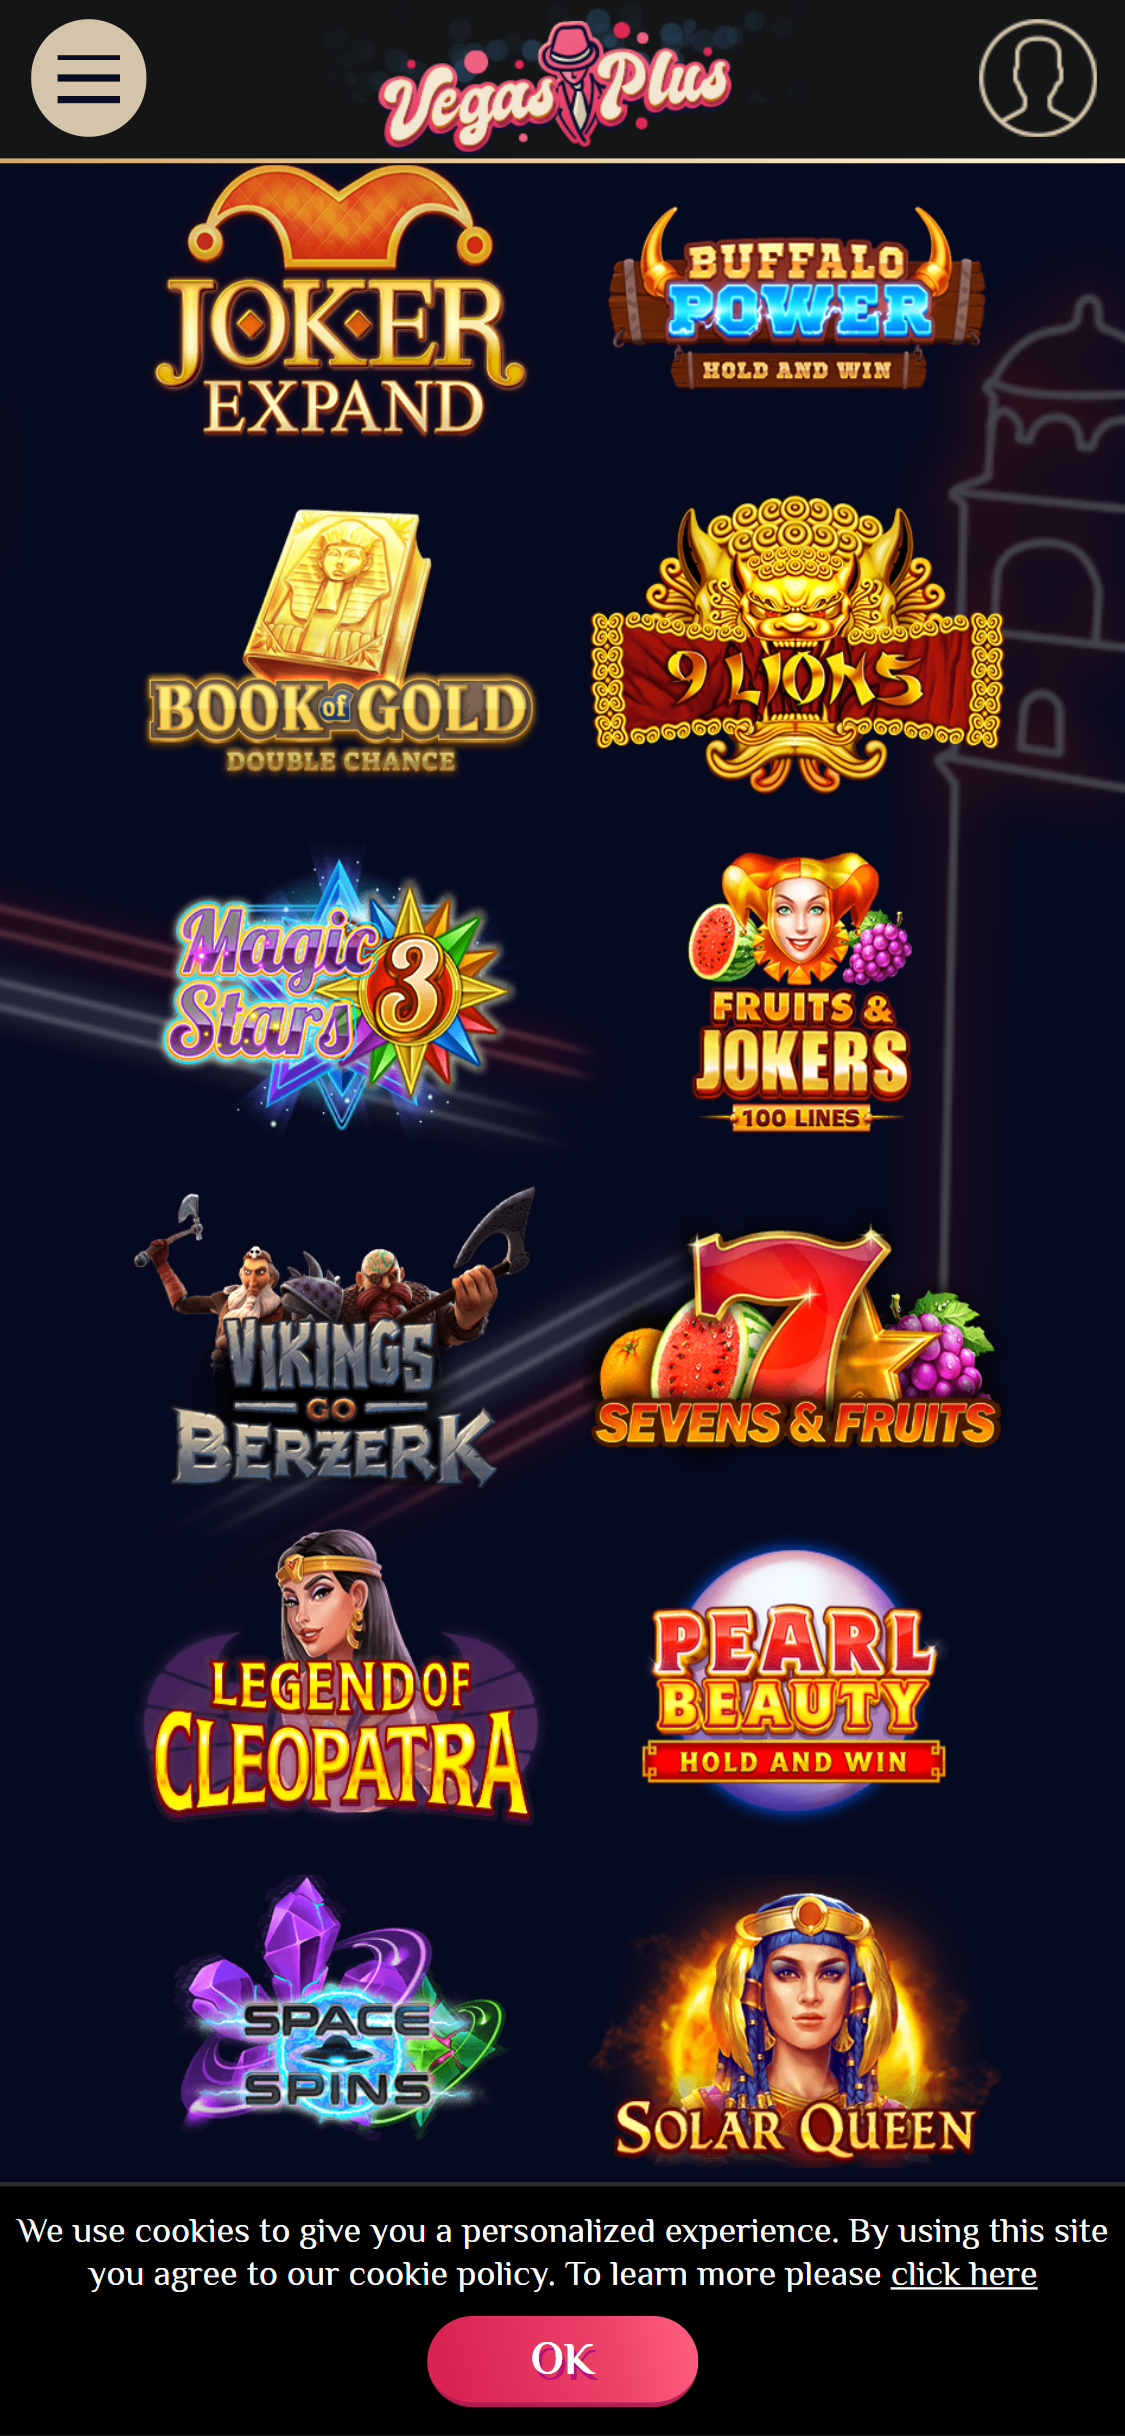 VegasPlus Casino Mobile Games Review